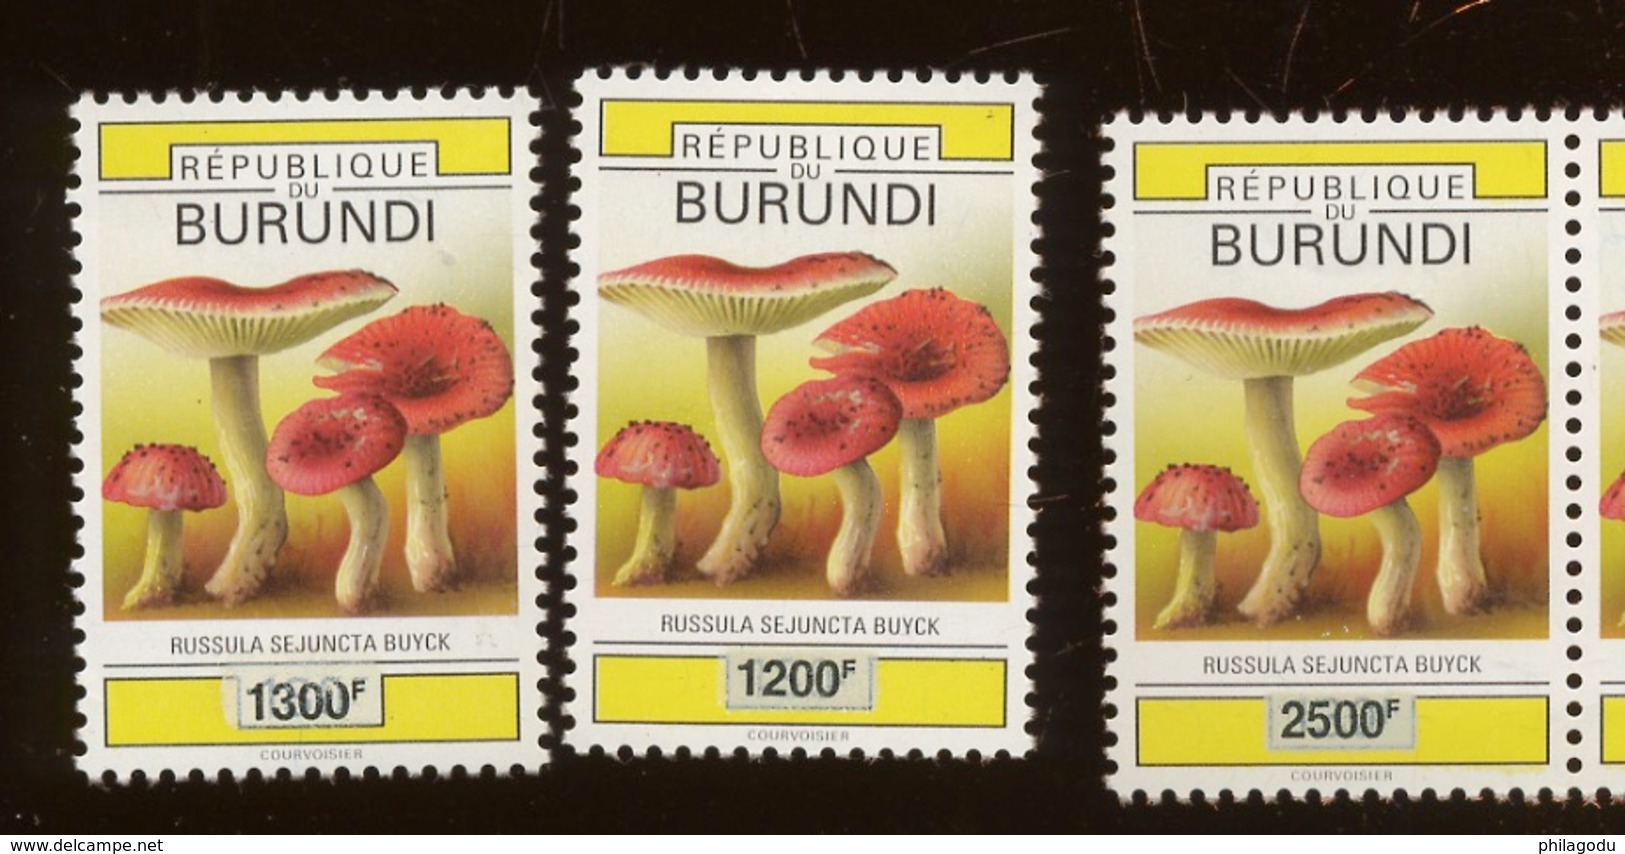 2008 3 Val Burundi Surchargées. CHAMPIGNONS Mushroom. Pilzen.  Cote 50,-euro La Série 3 Val - Ungebraucht